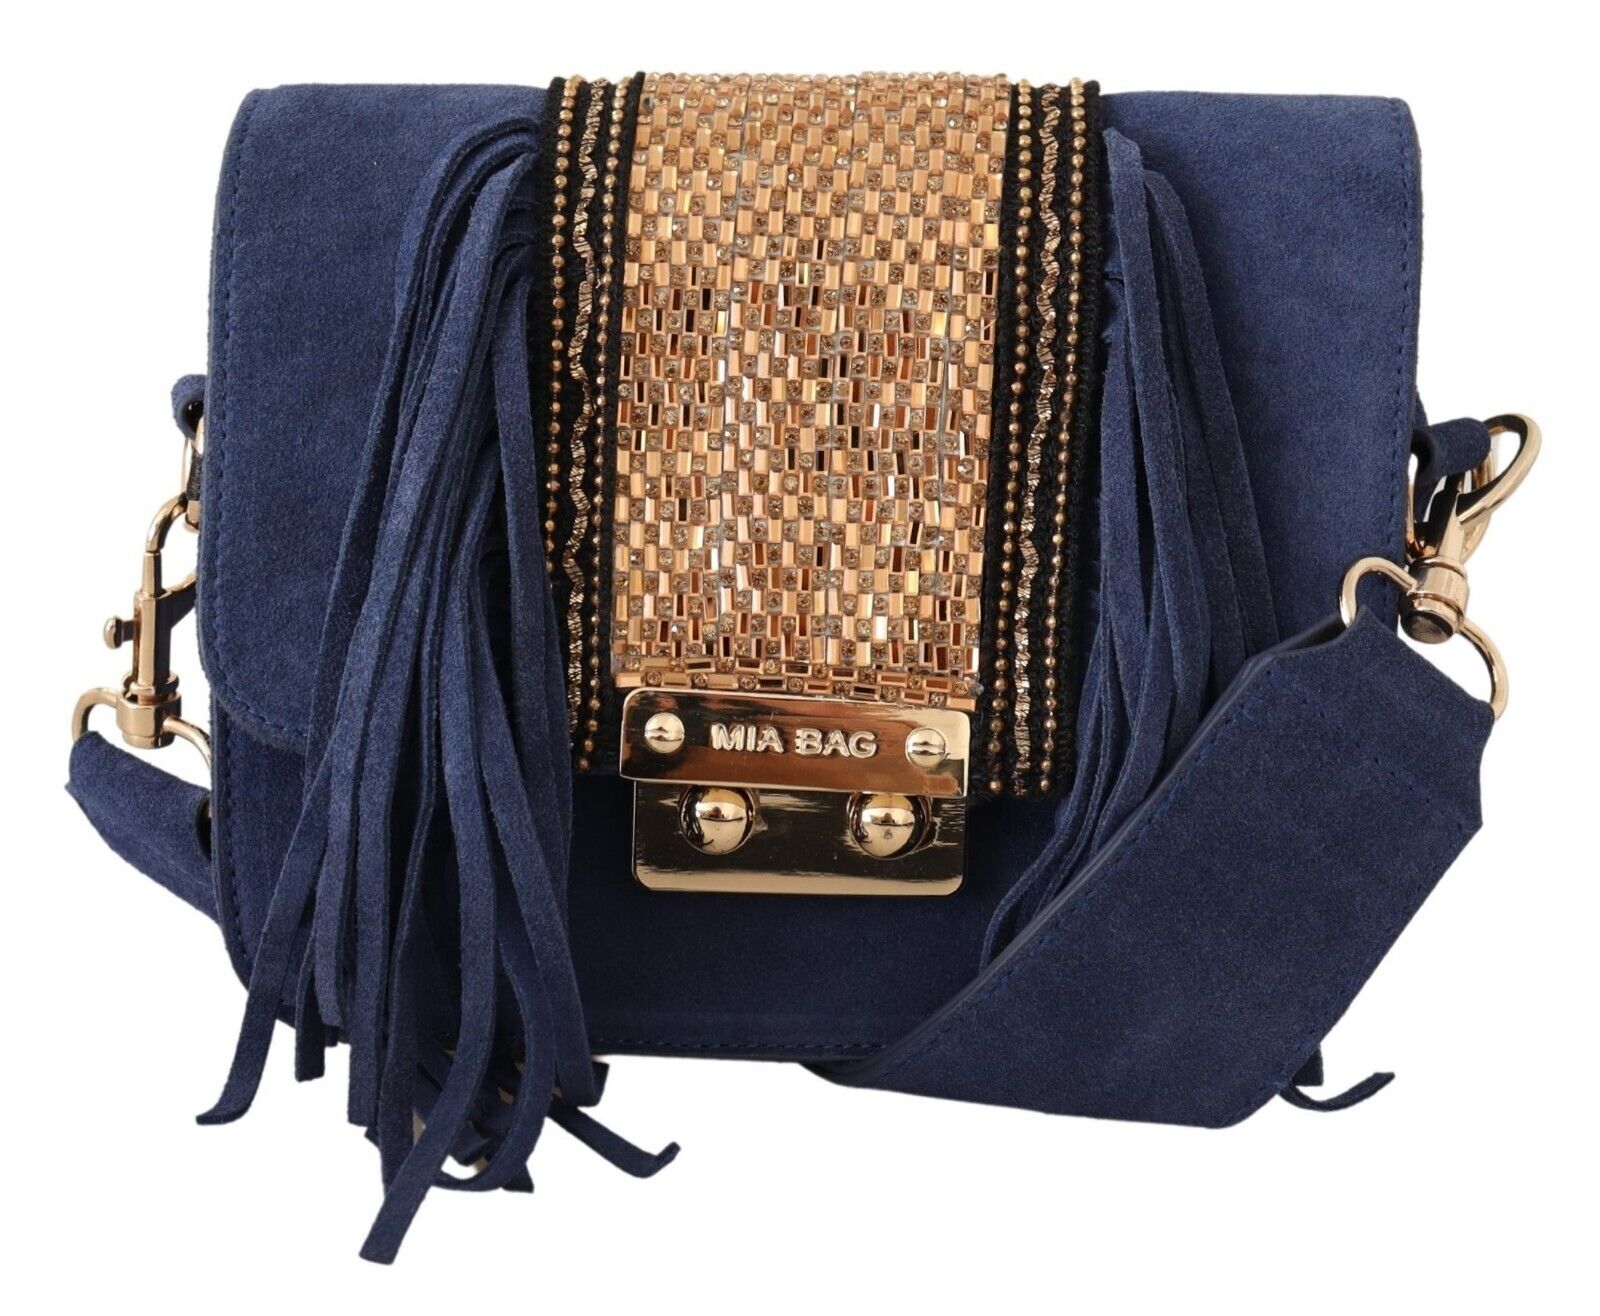 MIA Blue Suede Gold Applique Logo Shoulder Handbag Bag - Fizigo